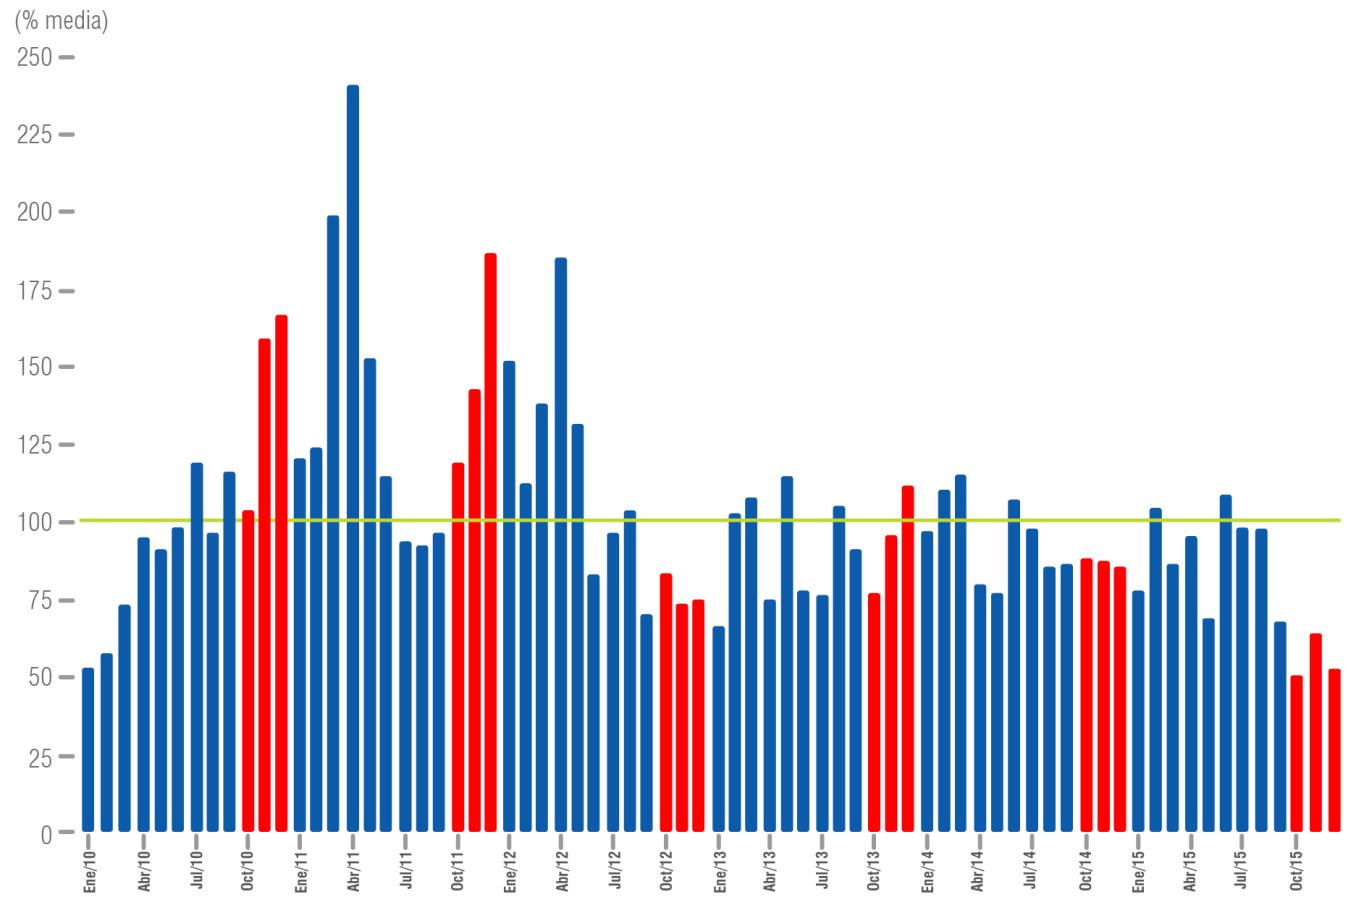 Aportes hídricos al SIN Fuente: XM Portal BI En la mayoría de los meses del año 2015, los aportes hídricos al SIN estuvieron por debajo de la media histórica.